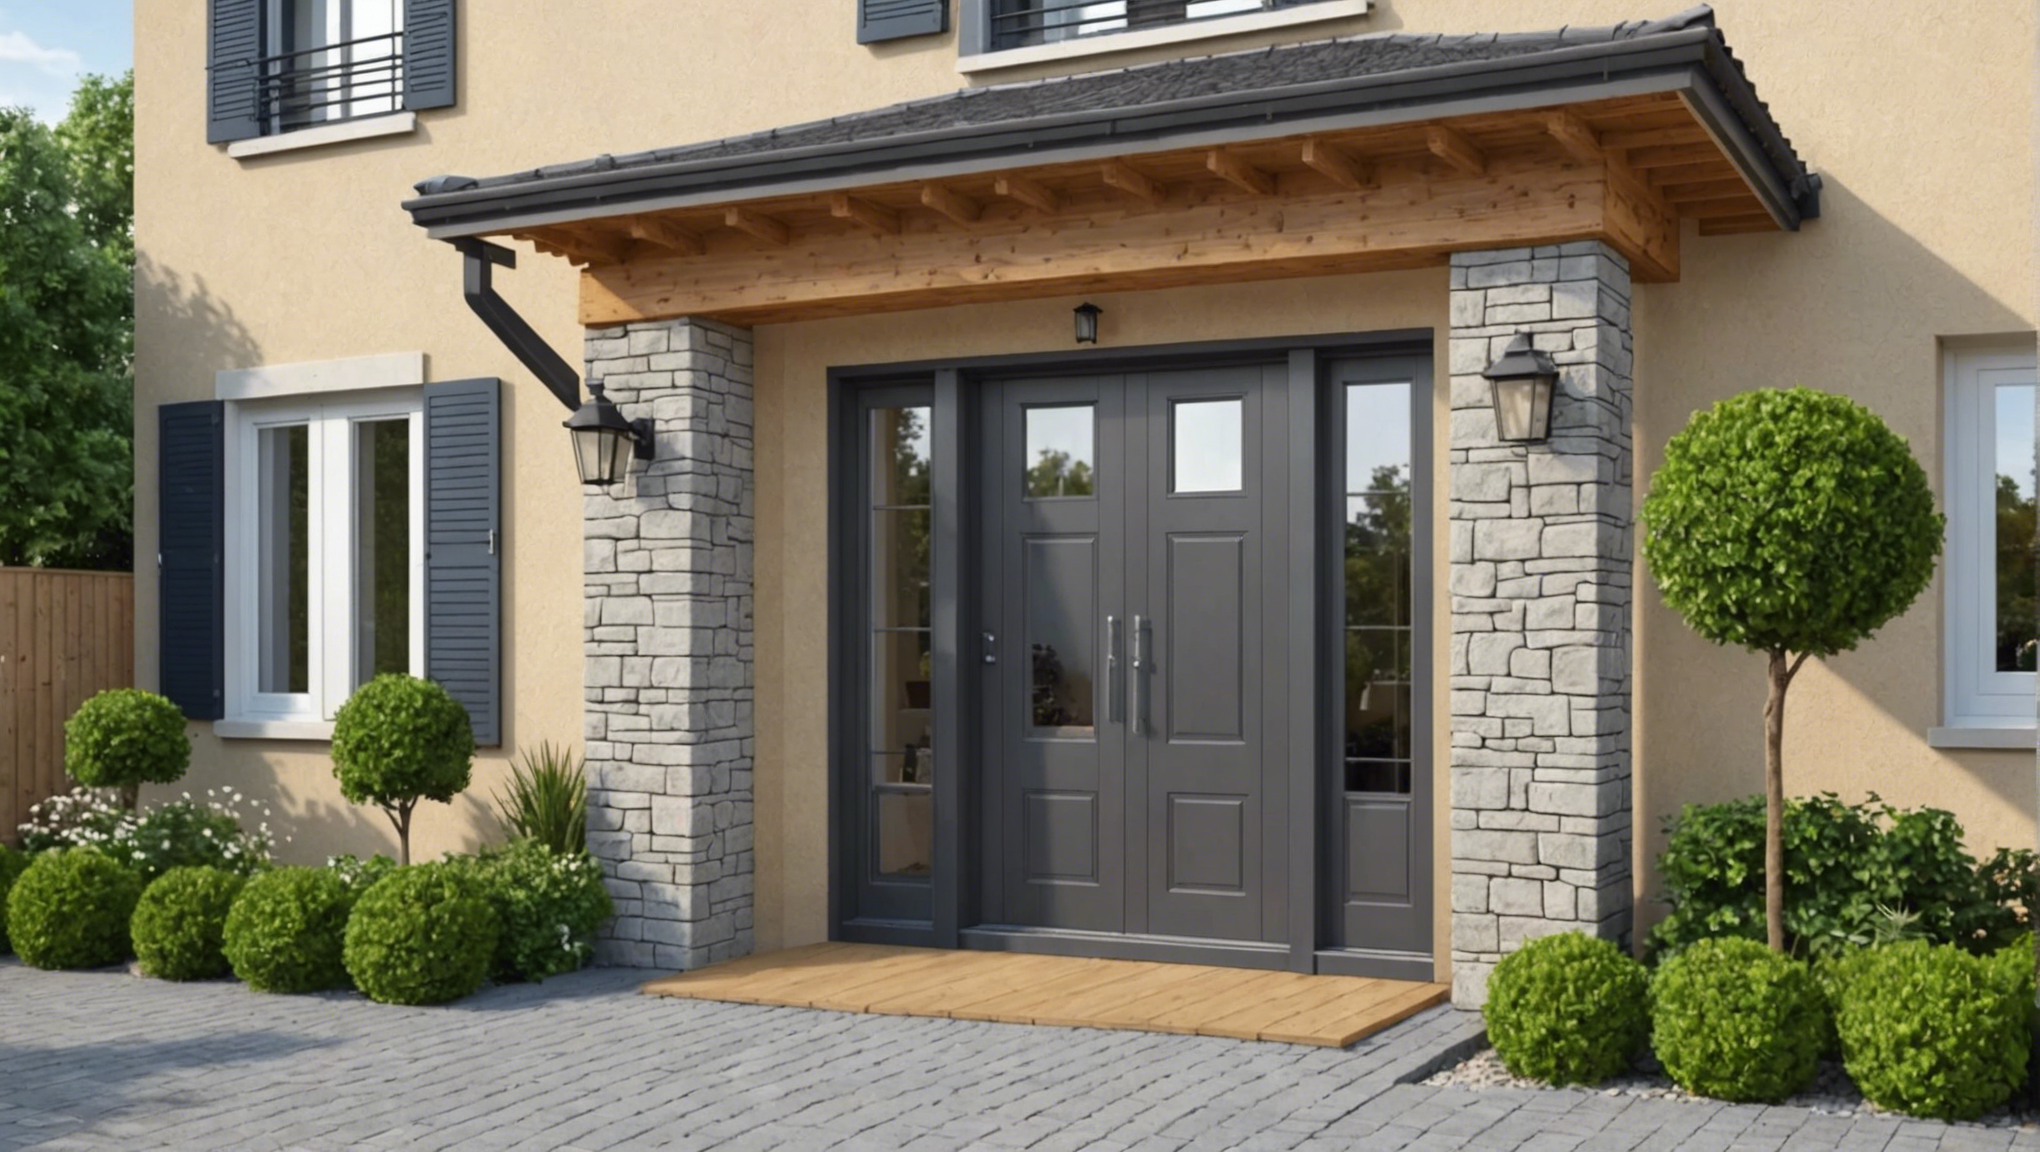 découvrez nos conseils pour choisir la parfaite entrée de portail pour votre maison et améliorer son esthétique et sa sécurité.